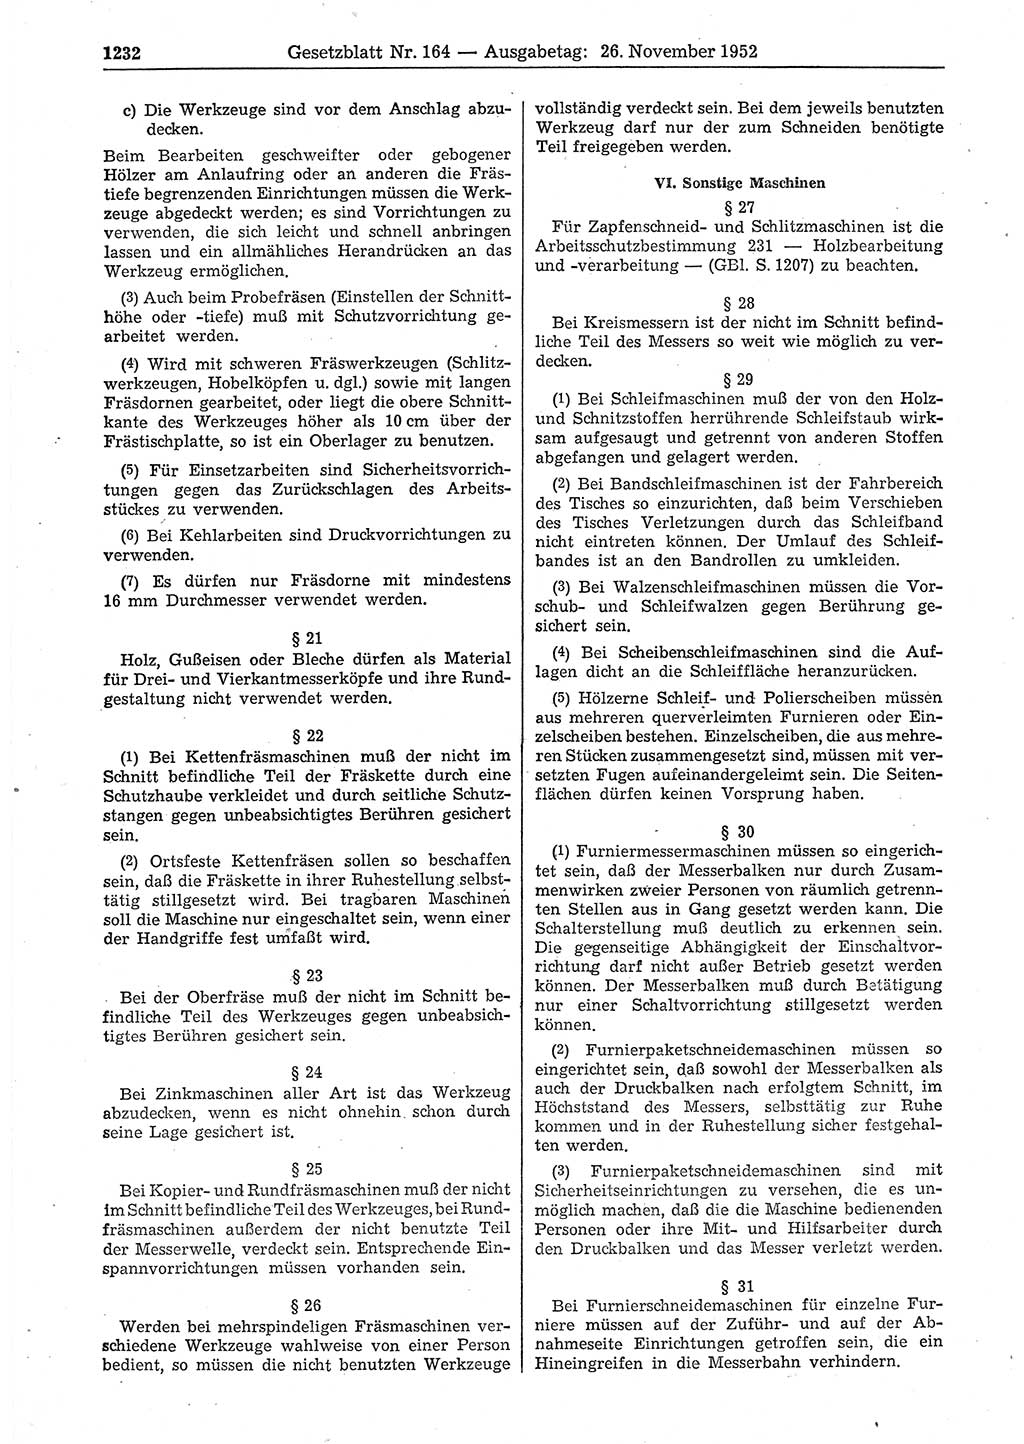 Gesetzblatt (GBl.) der Deutschen Demokratischen Republik (DDR) 1952, Seite 1232 (GBl. DDR 1952, S. 1232)